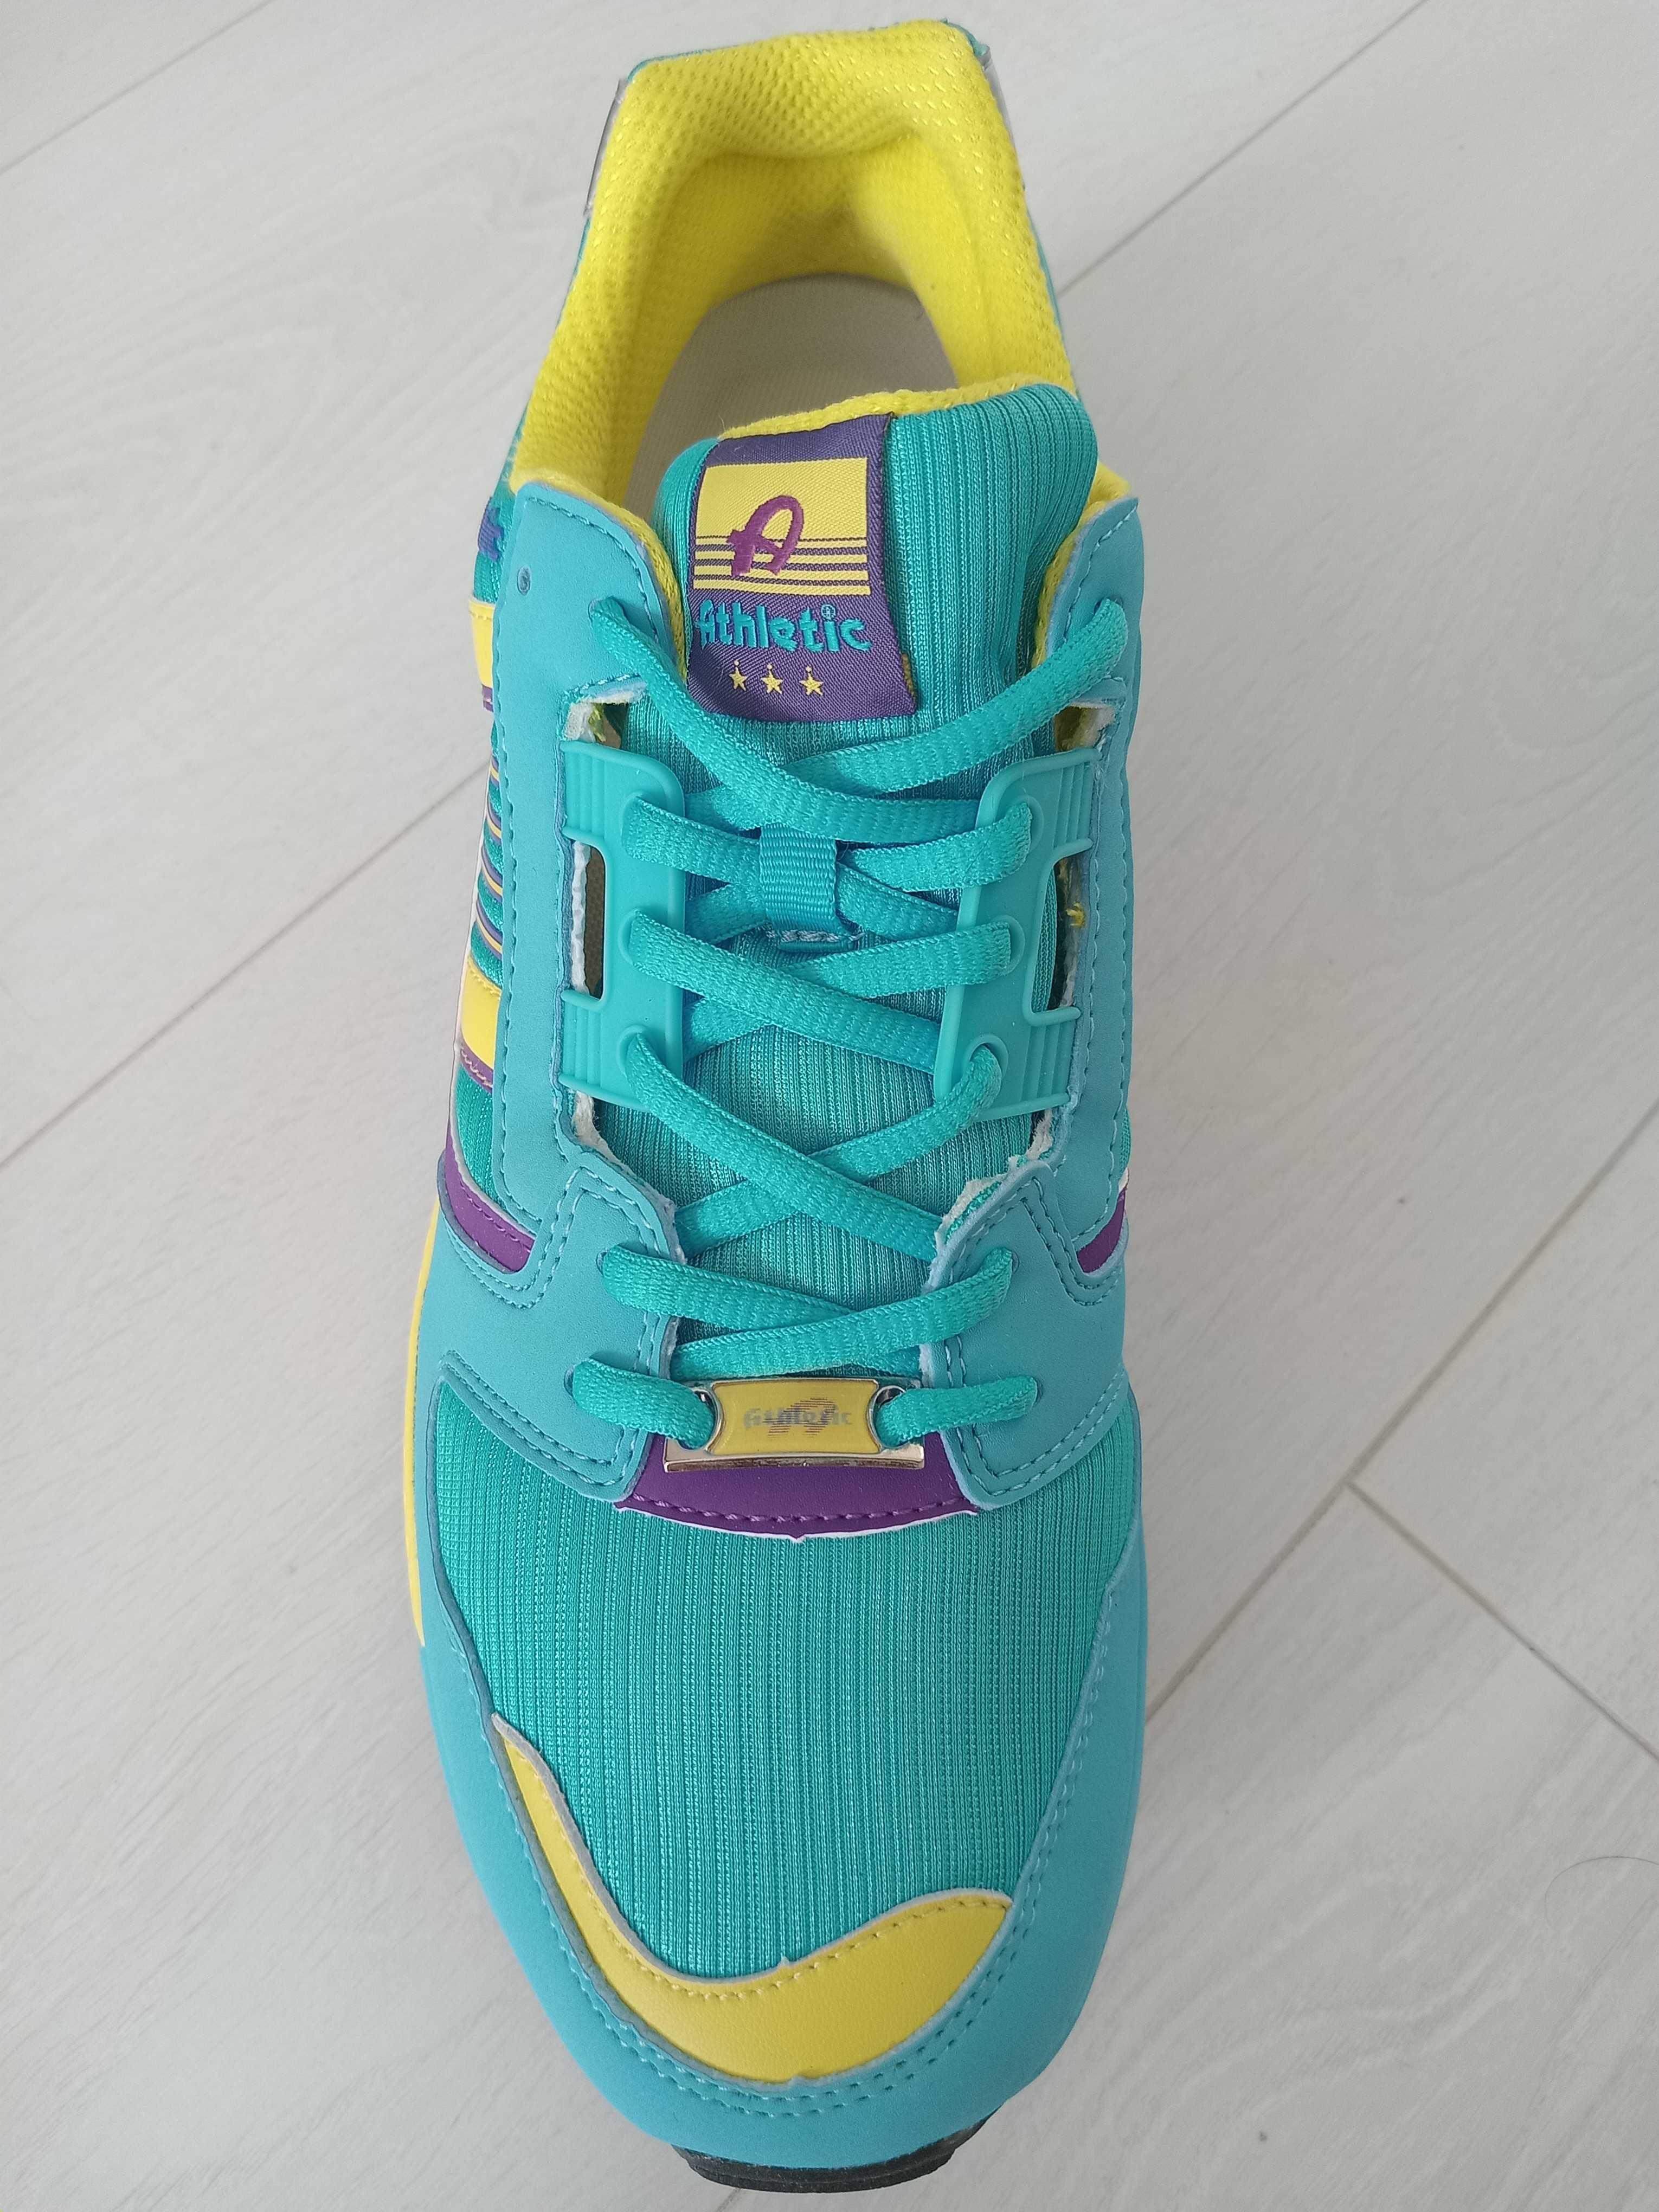 Новые  мужские  кроссовки ATHLETIC  43р по стельке 27.5 см